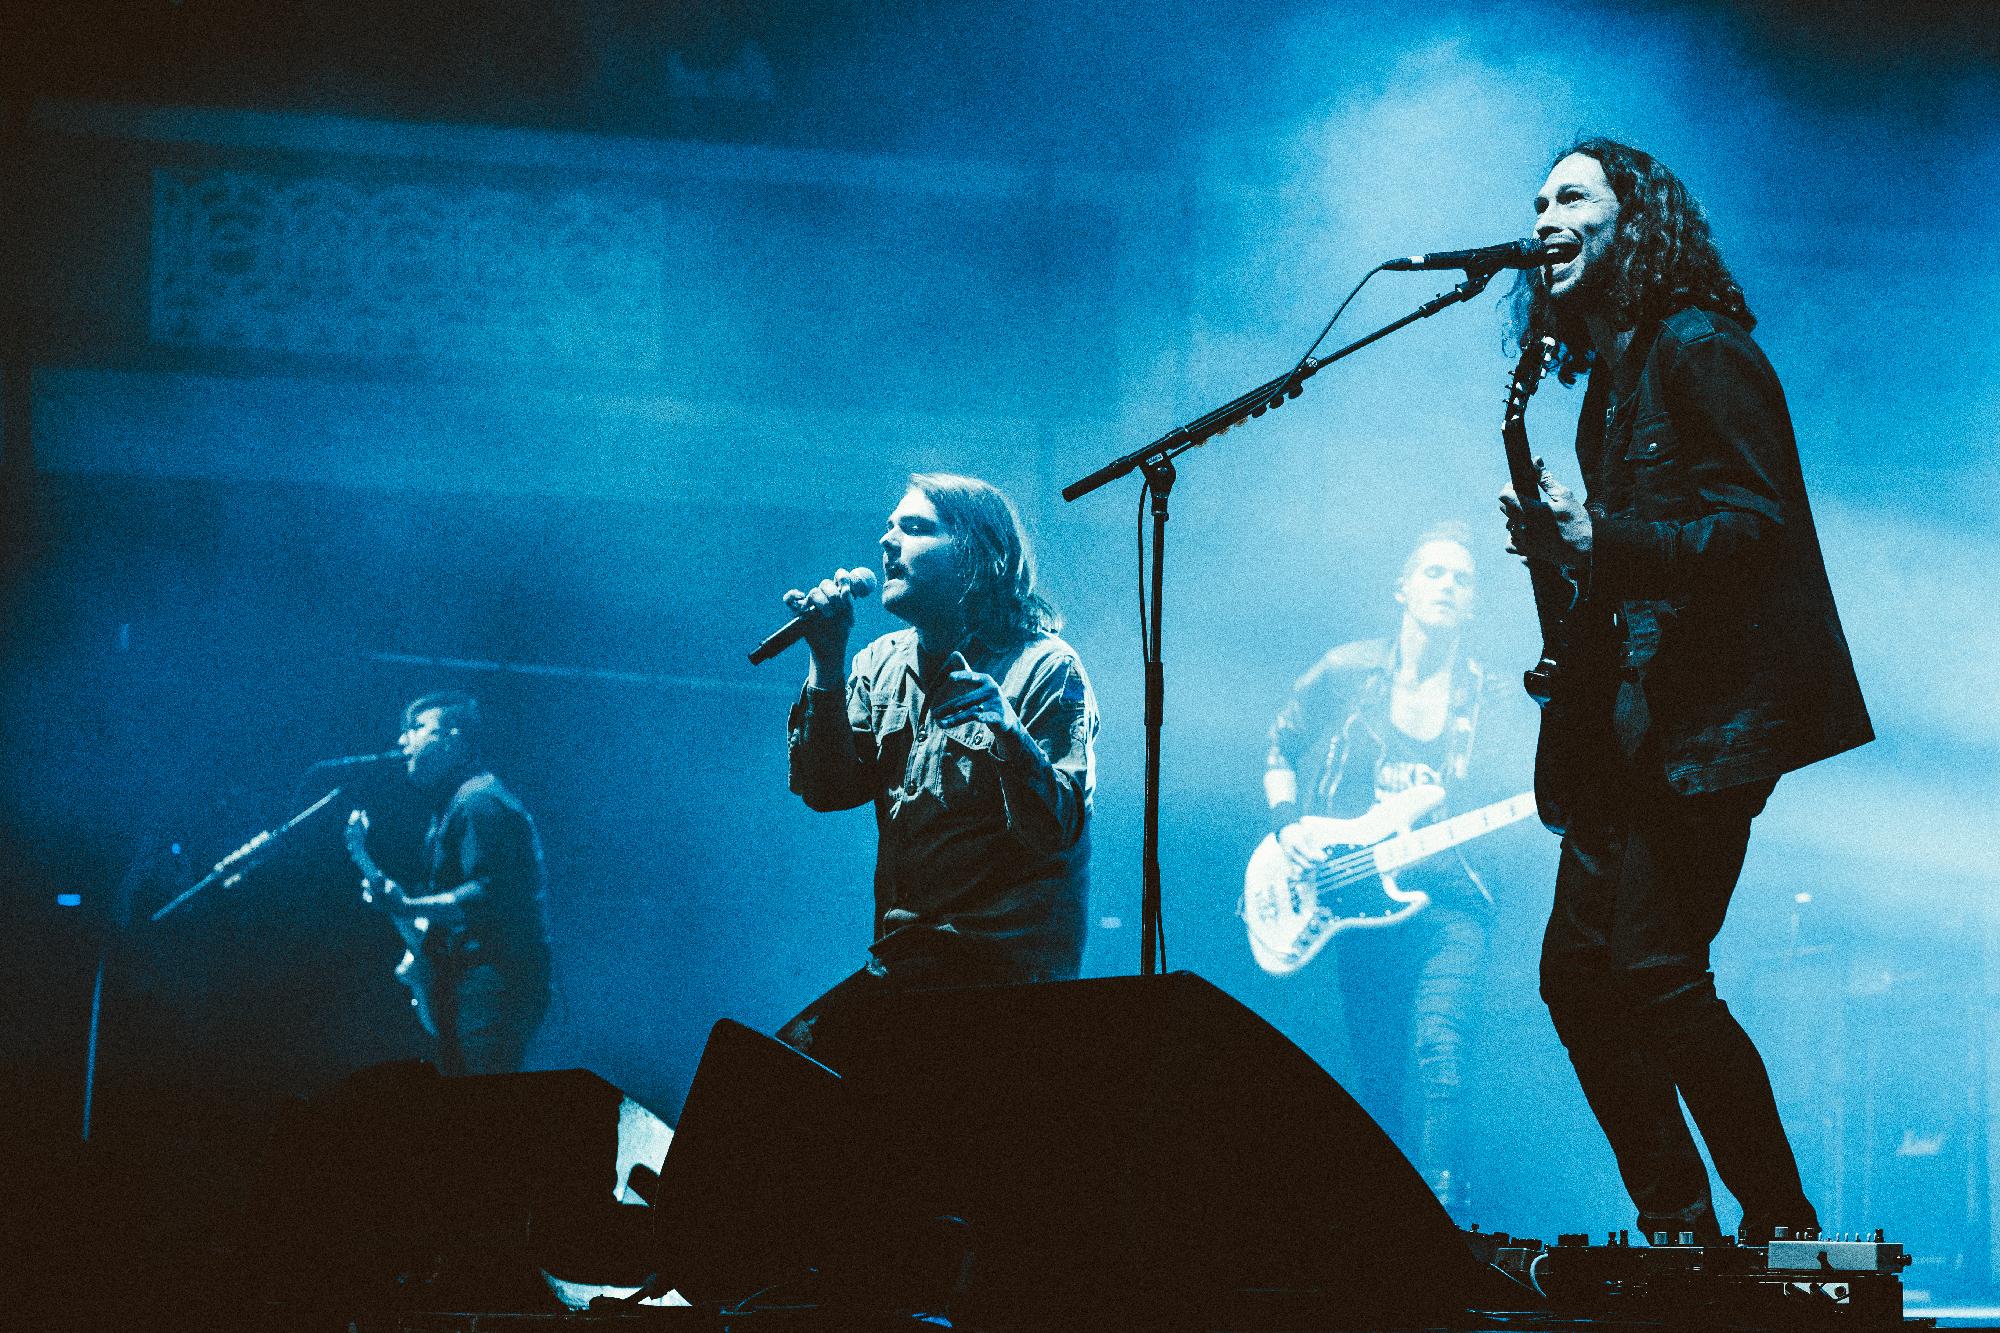 Hosszú kihagyás után a Budapest Park színpadán tér vissza a magyar közönséghez a My Chemical Romance